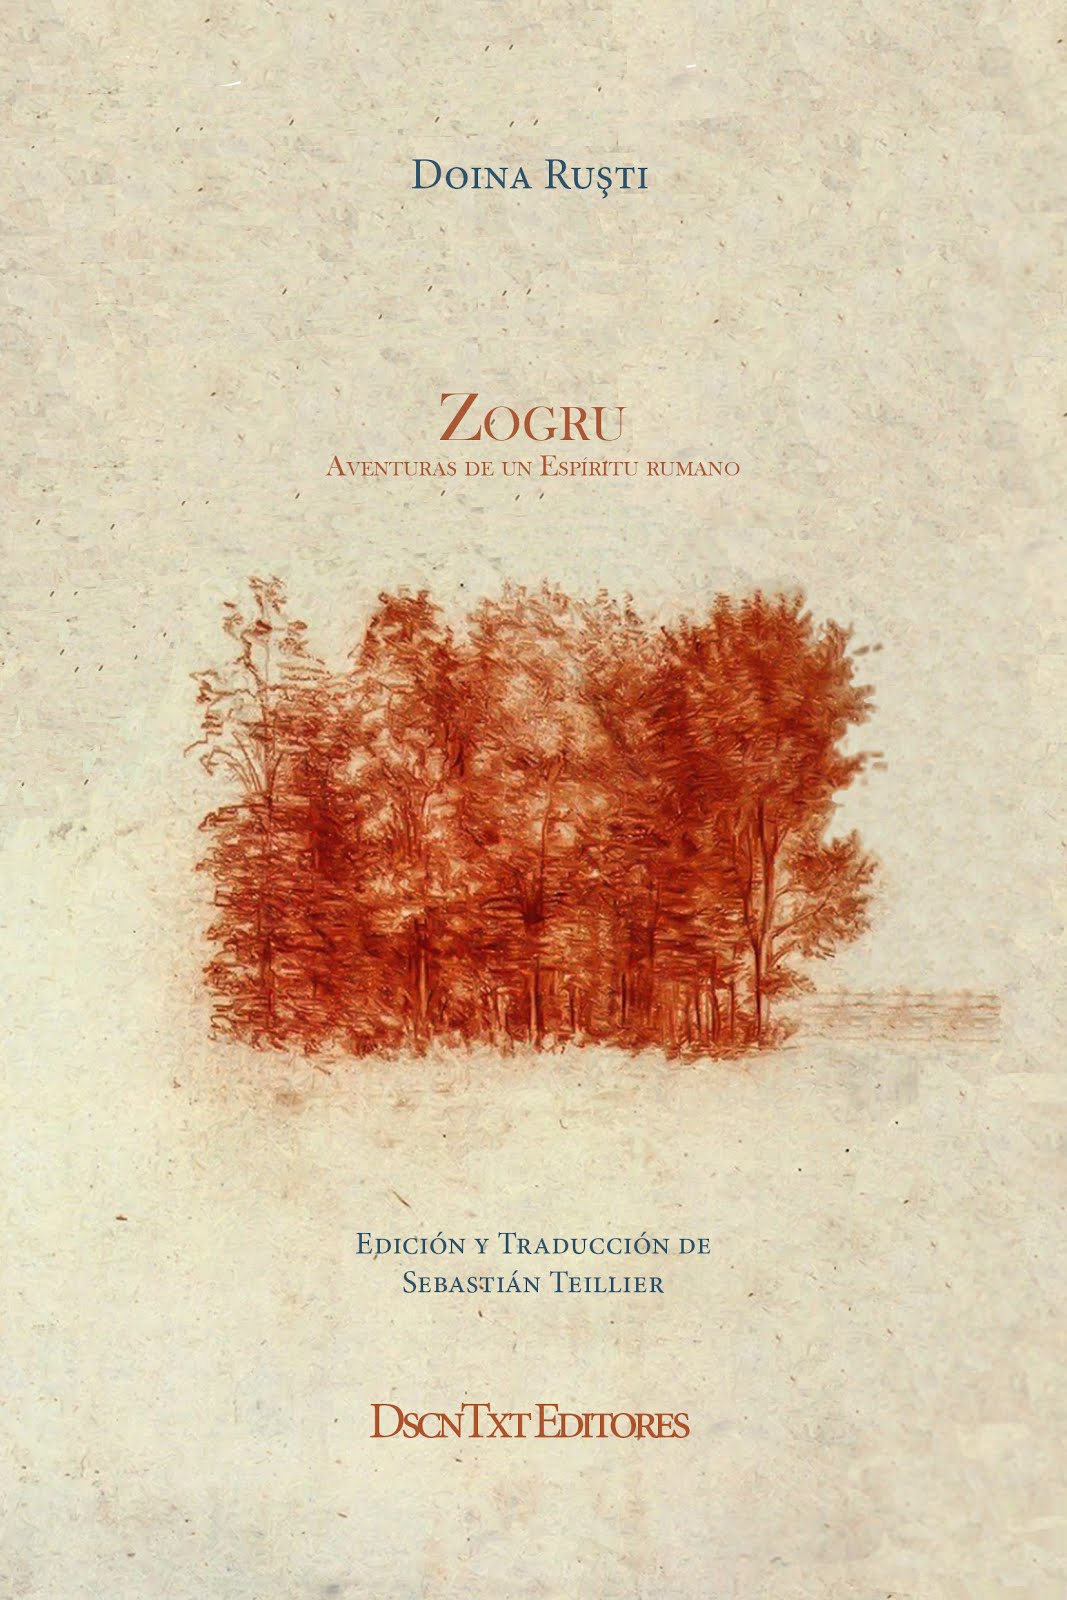 Zogru (Aventuras de un espíritu rumano), de Doina Ruşti. Traducción de Sebastián Teillier